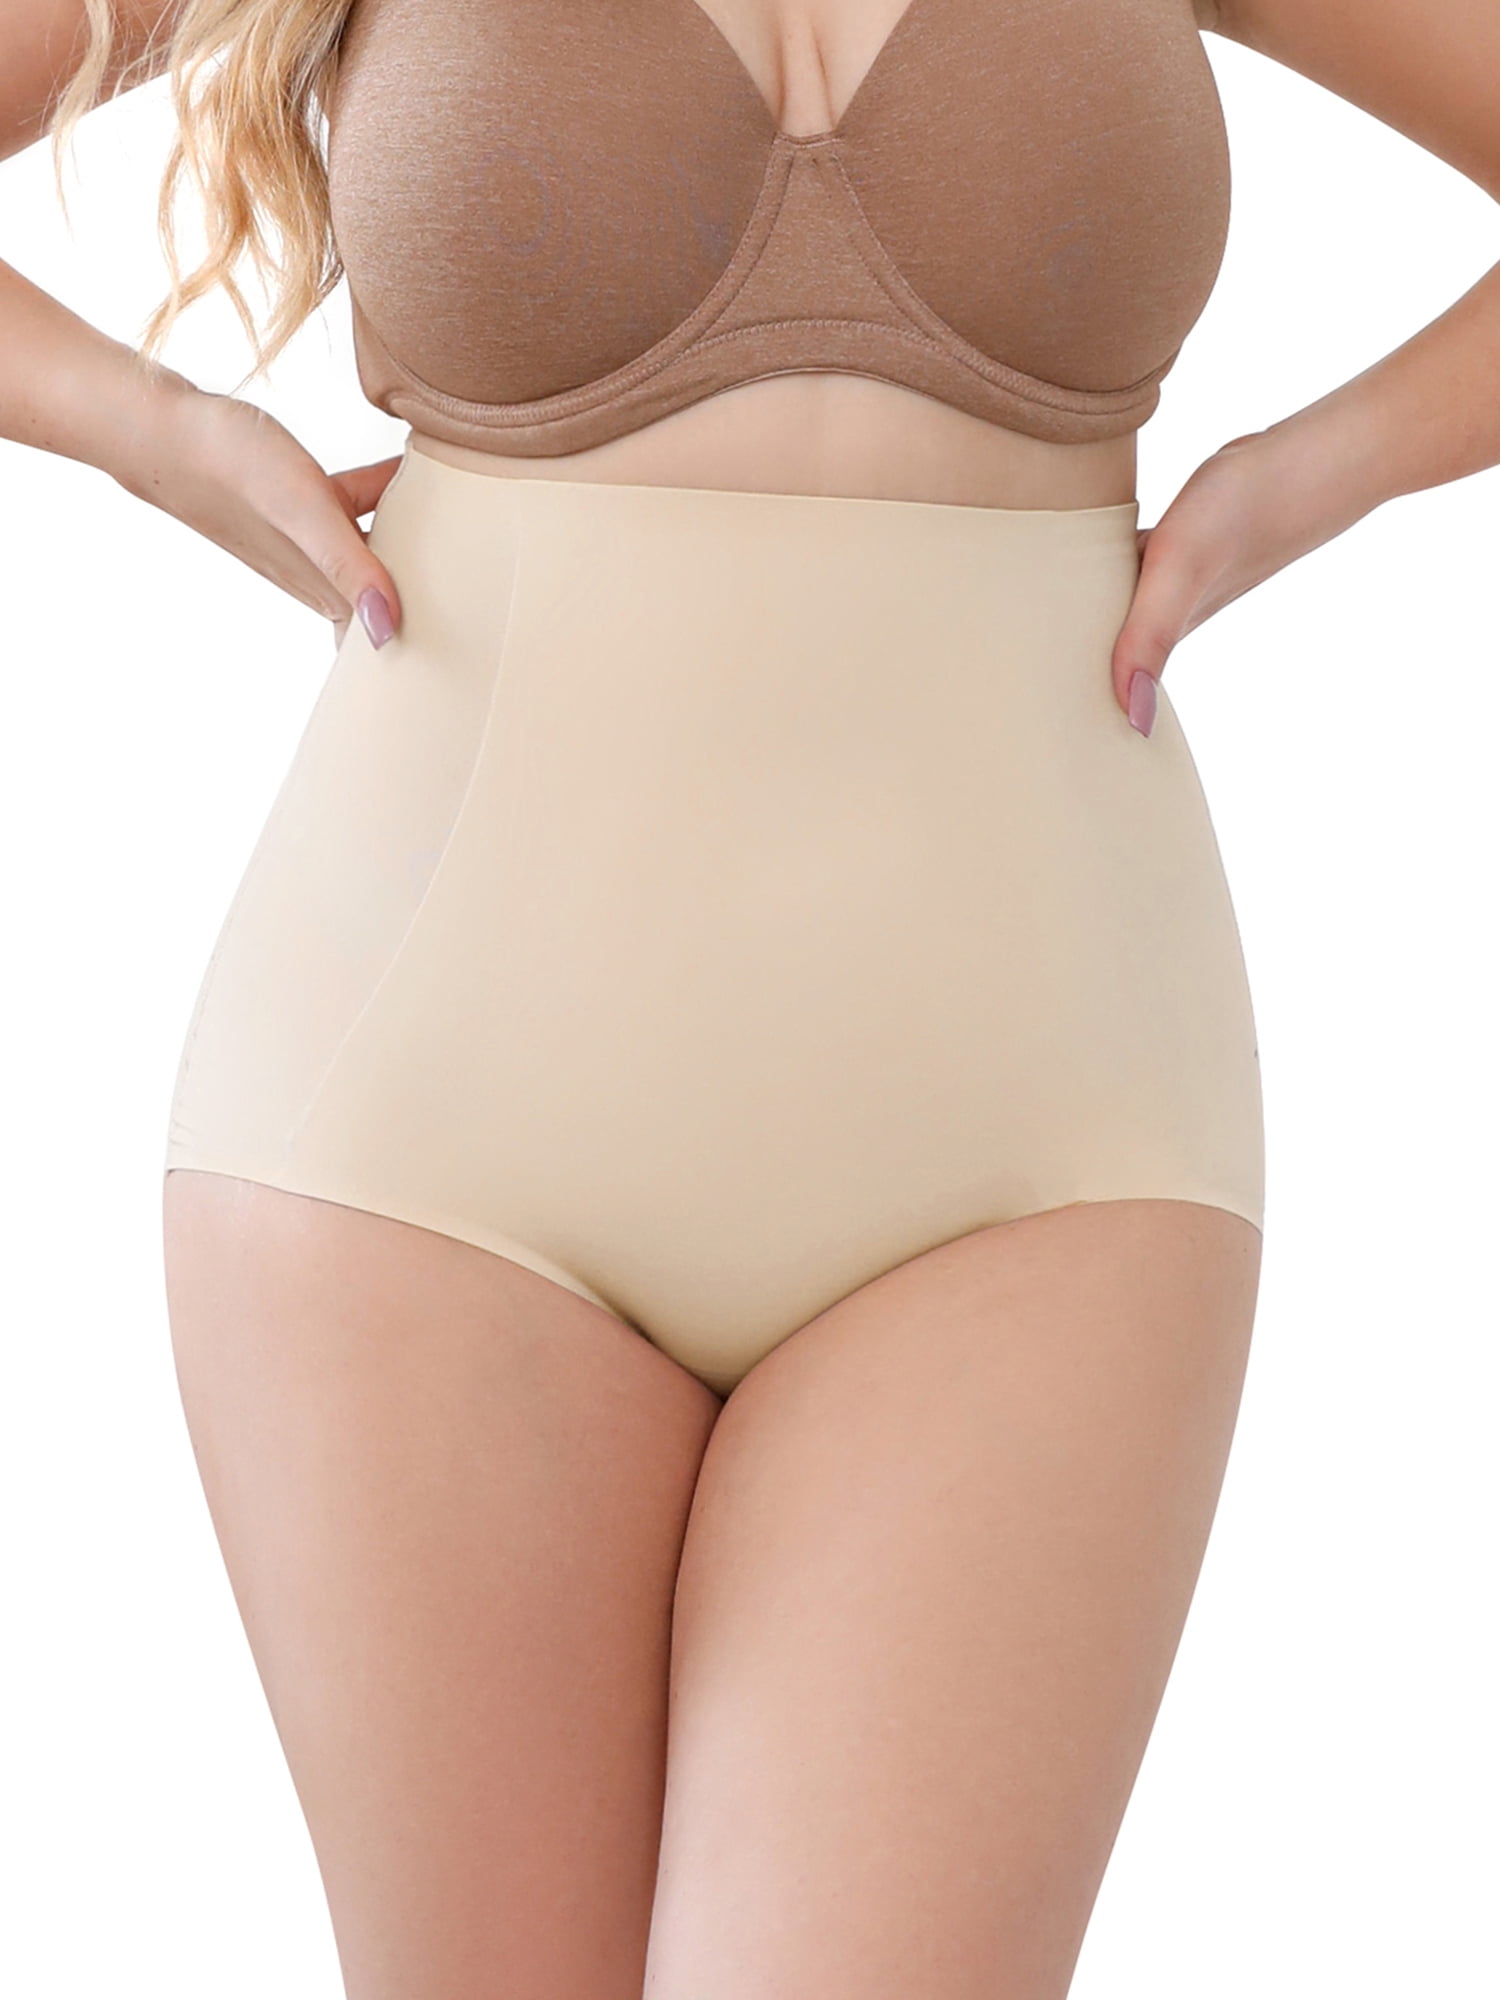 DODOING Tummy Control Underwear for Women Stomach Shapewear Panties Butt  Lifter Shapewear for Women Body Shaper Underwear Waist Trainer Girdle  Slimmer - Walmart.com